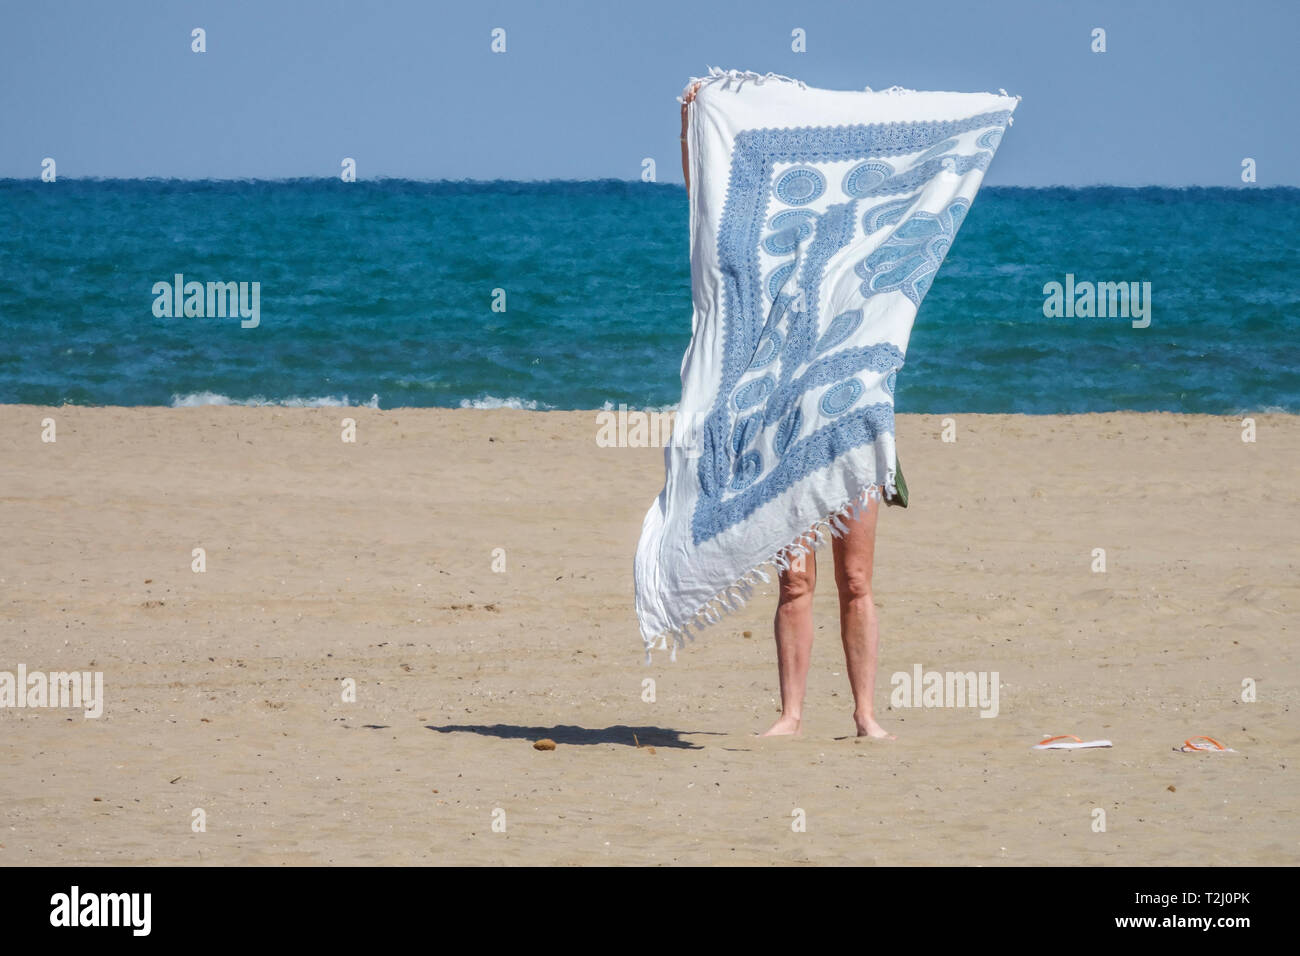 Valencia plage Malvarrosa, femme solitaire serviette plage mer et ciel Espagne vue mer femme à la plage femme seul minimalisme pictural femme cachée Banque D'Images